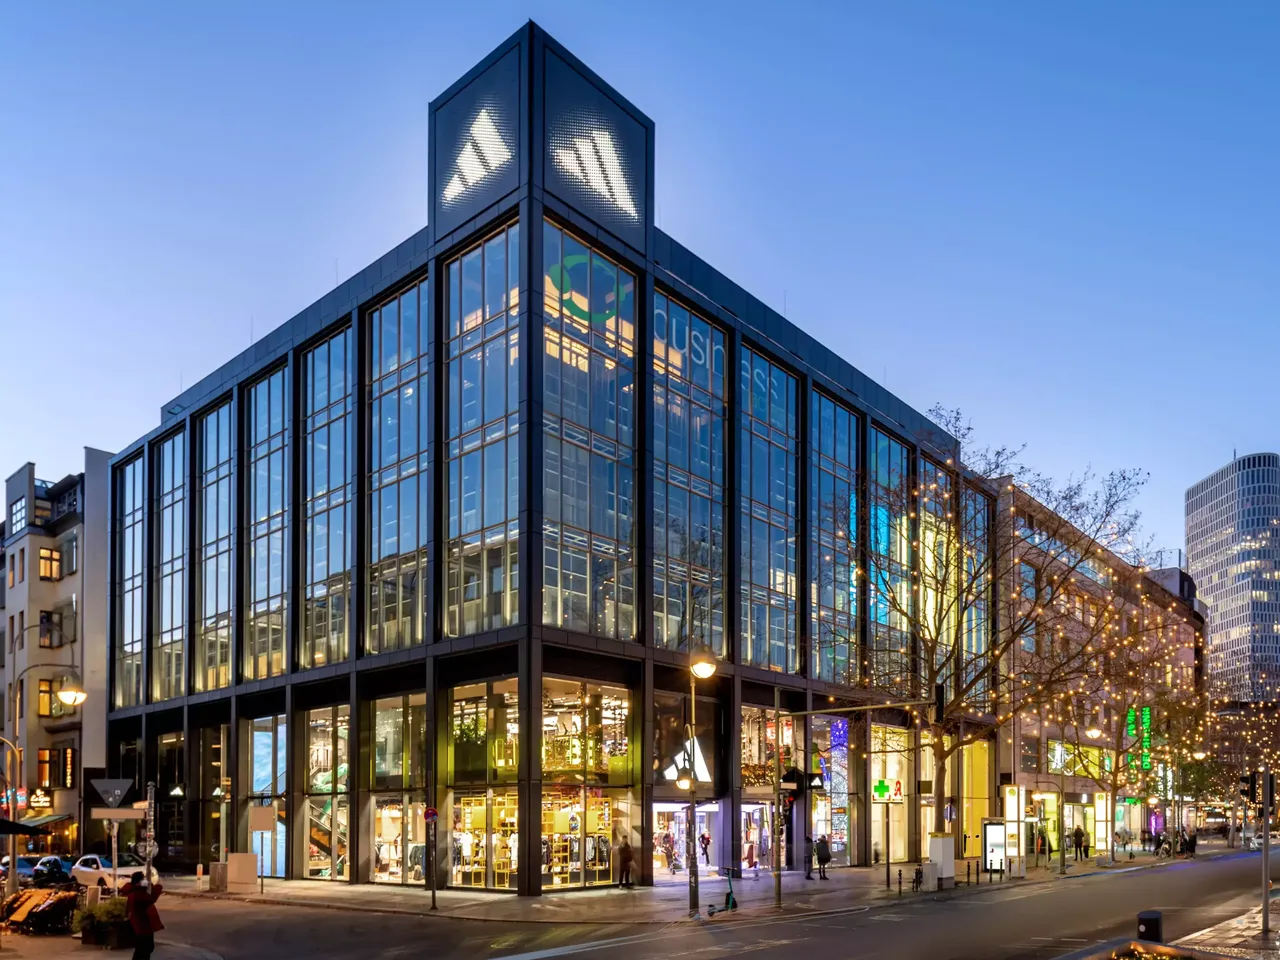 Außenansicht: Es wird die Fassade der hausInvest Immobilie Adidas-Haus in Berlin abgebildet